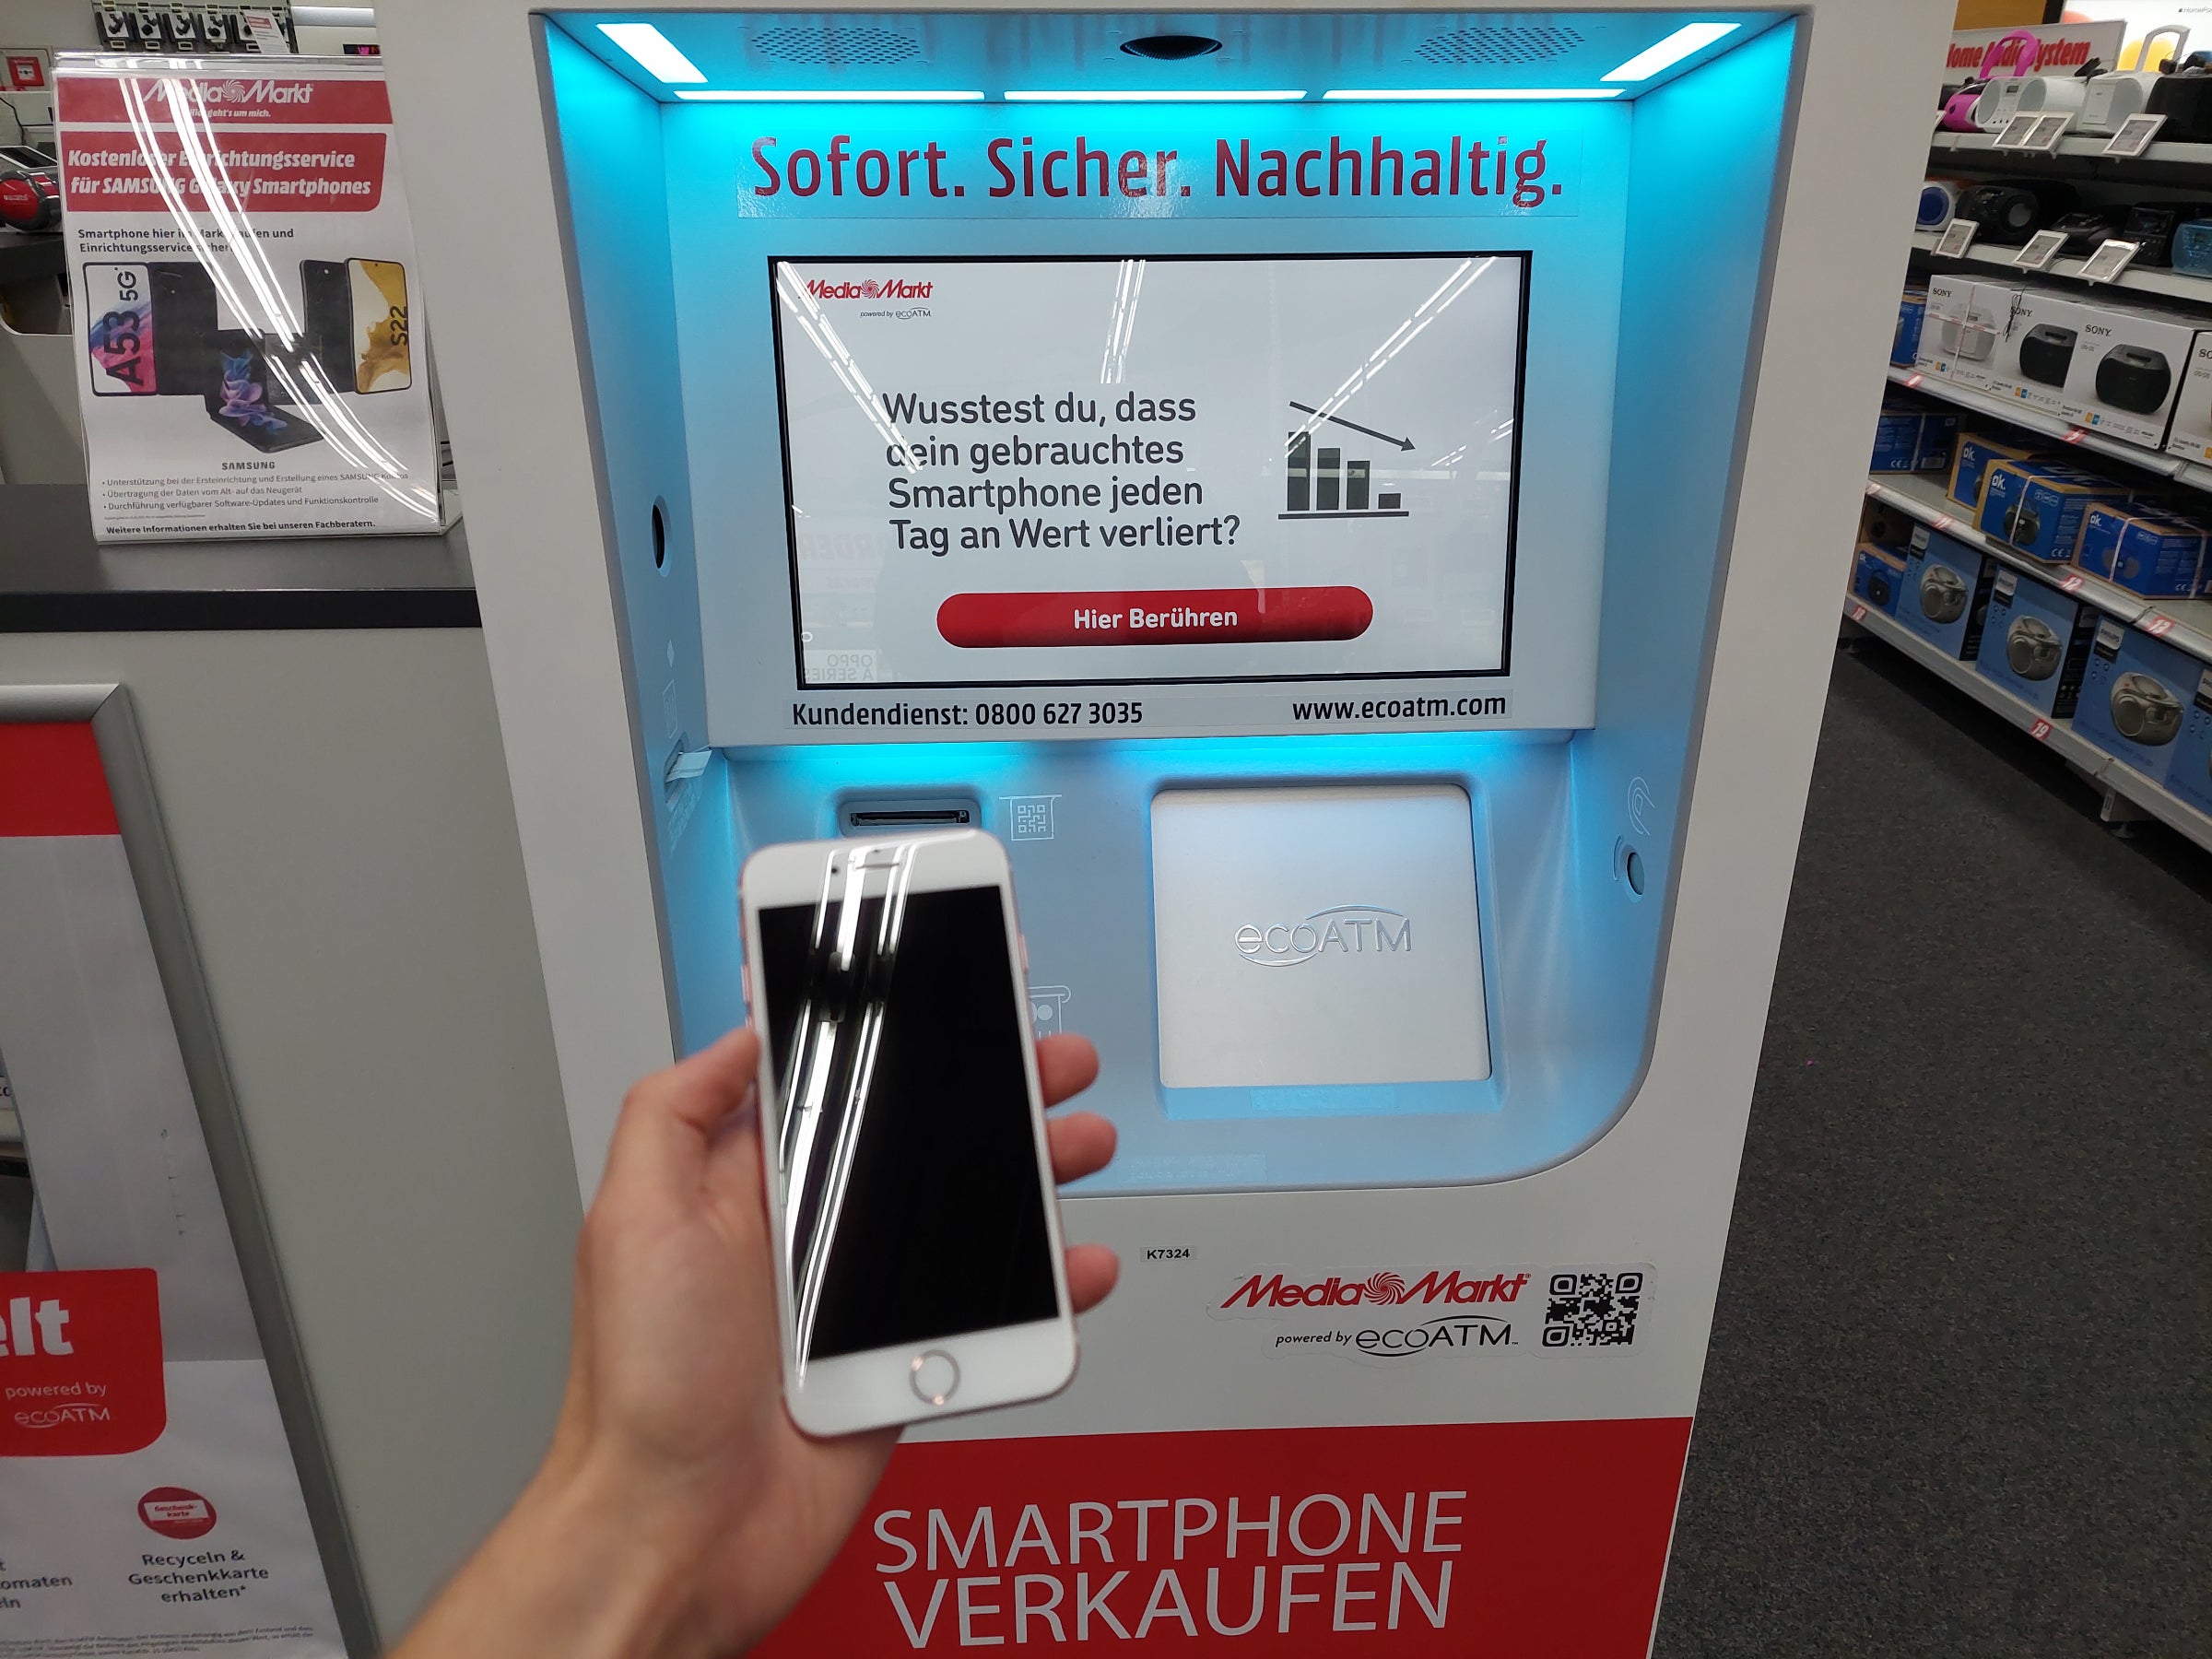 MediaMarkt Smartphone Sofort Reparatur